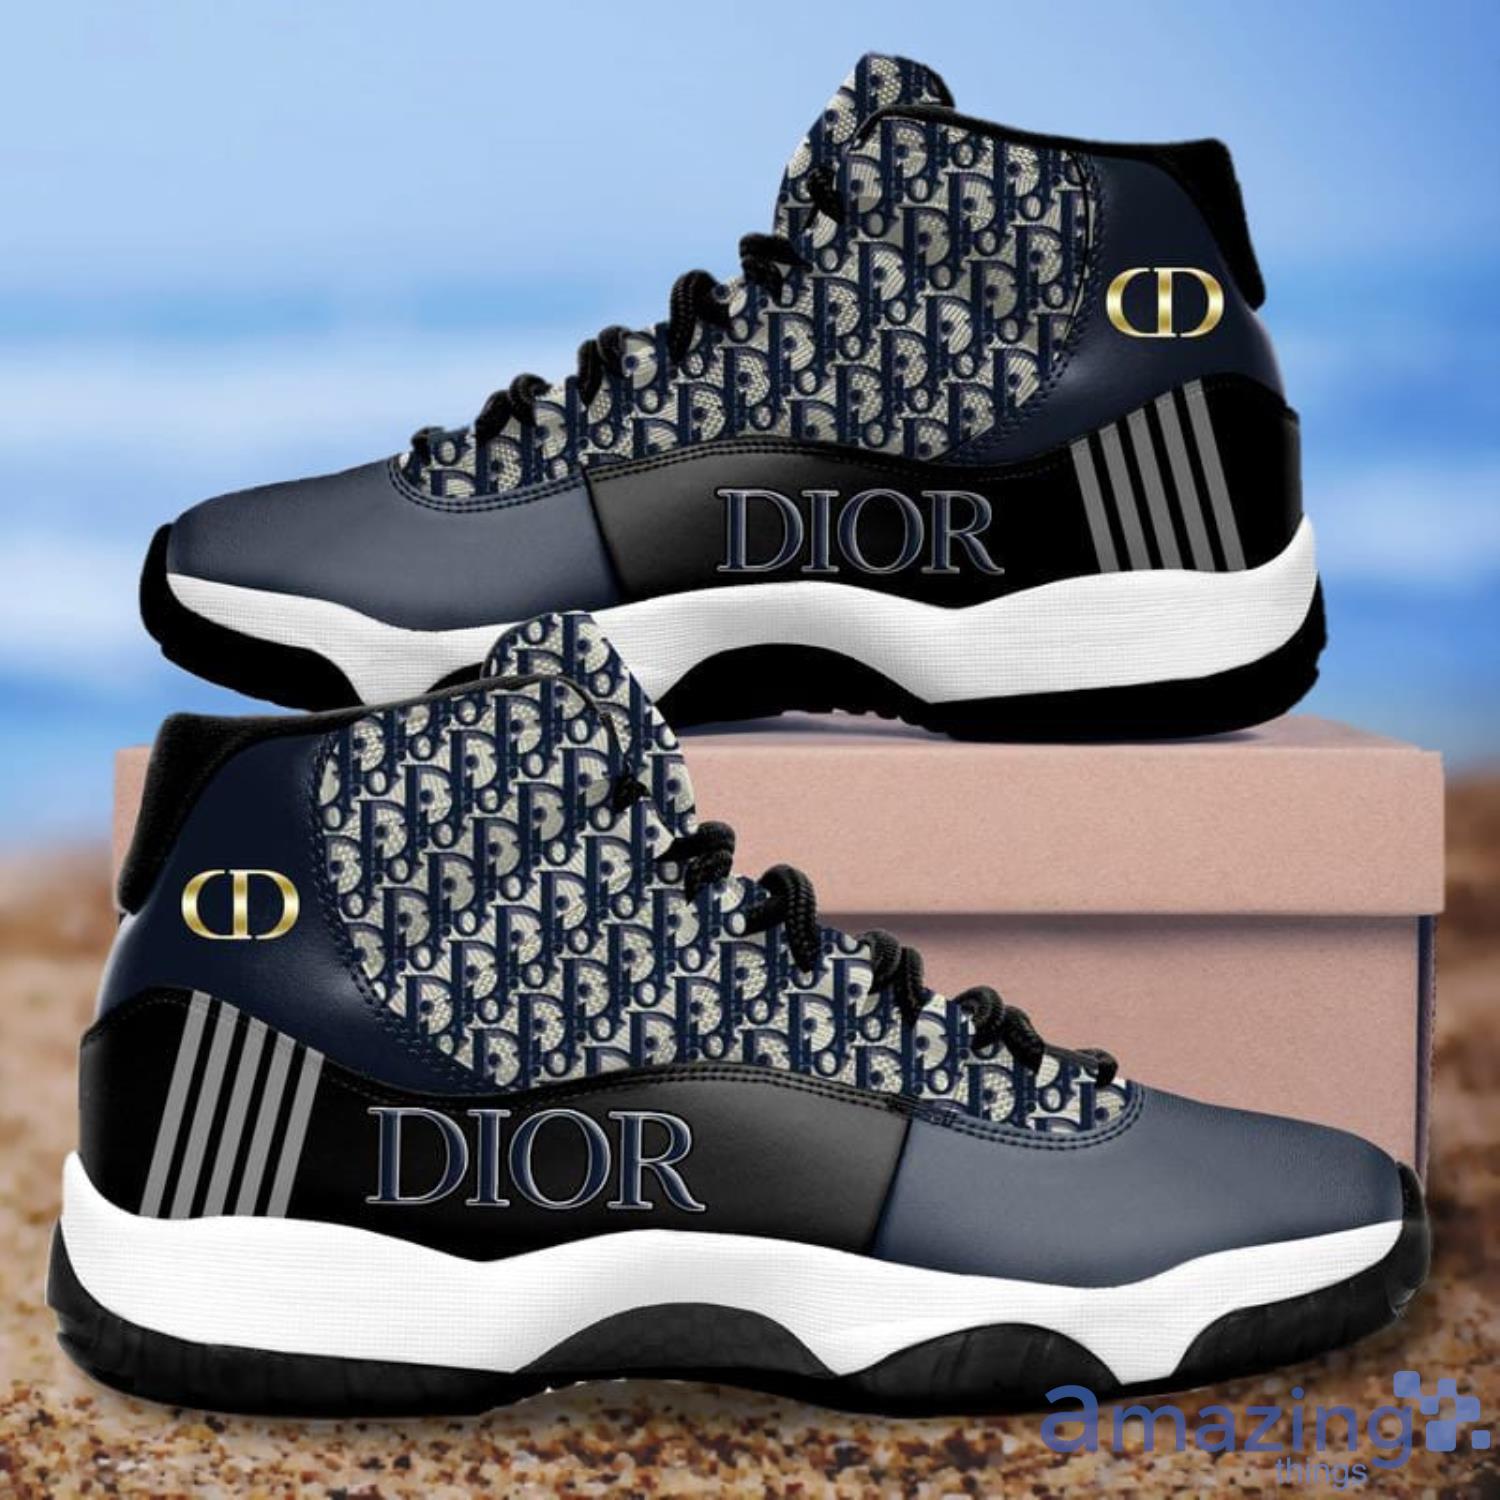 Dior Jordan 11 Shoes Sport Shoes Fans